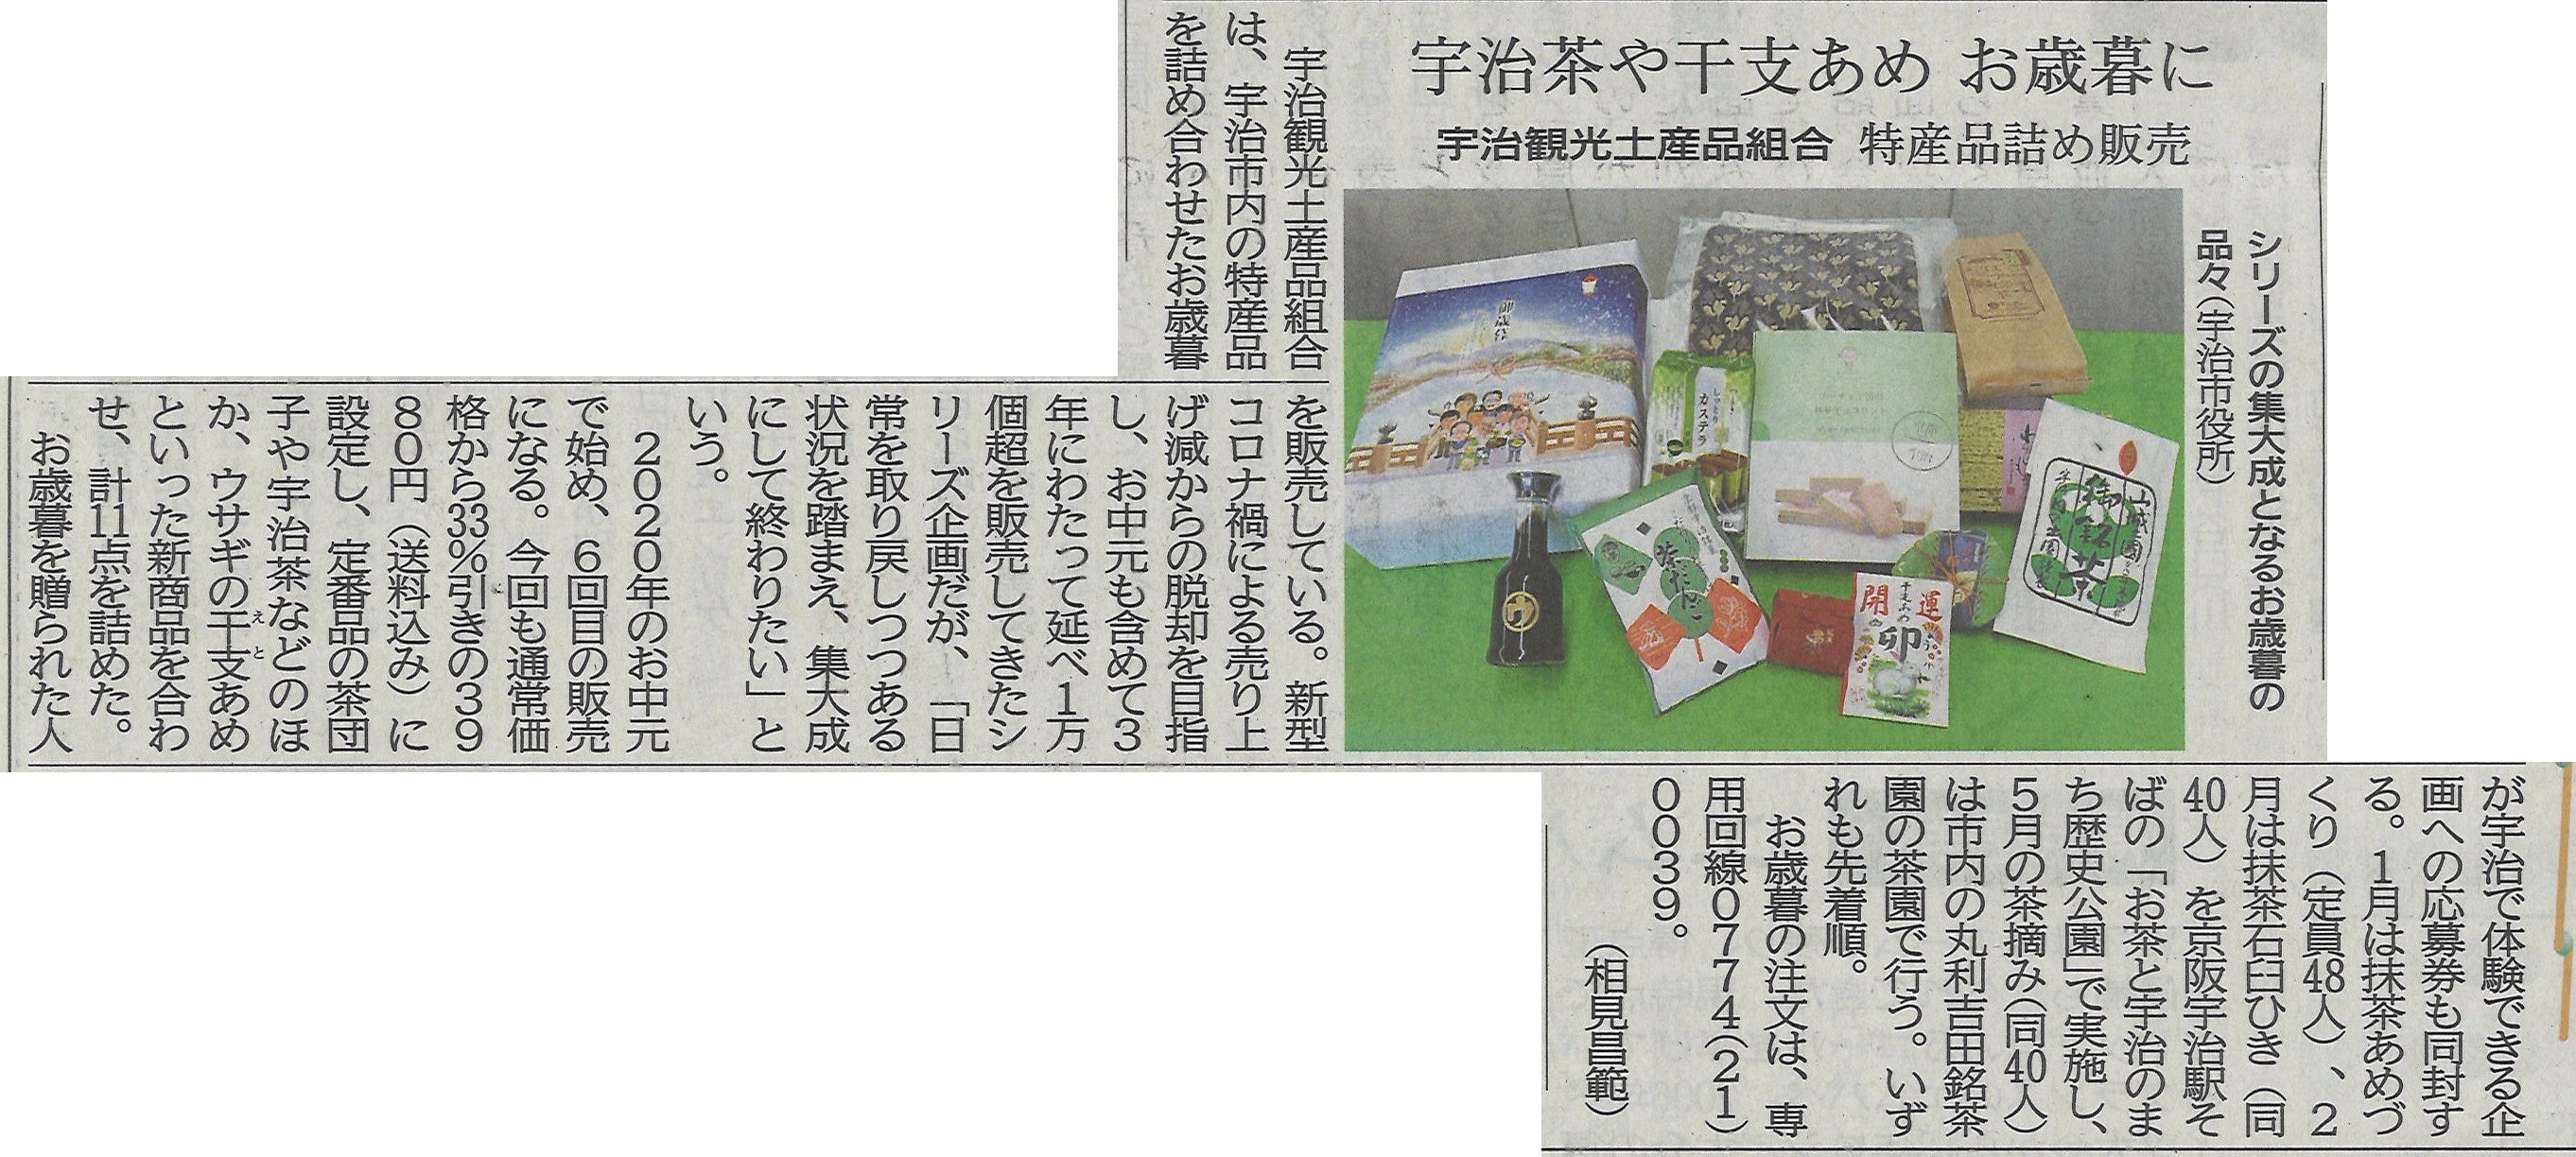 12月09日 京都新聞にて宇治観光土産品組合による集合ギフト第６弾が紹介